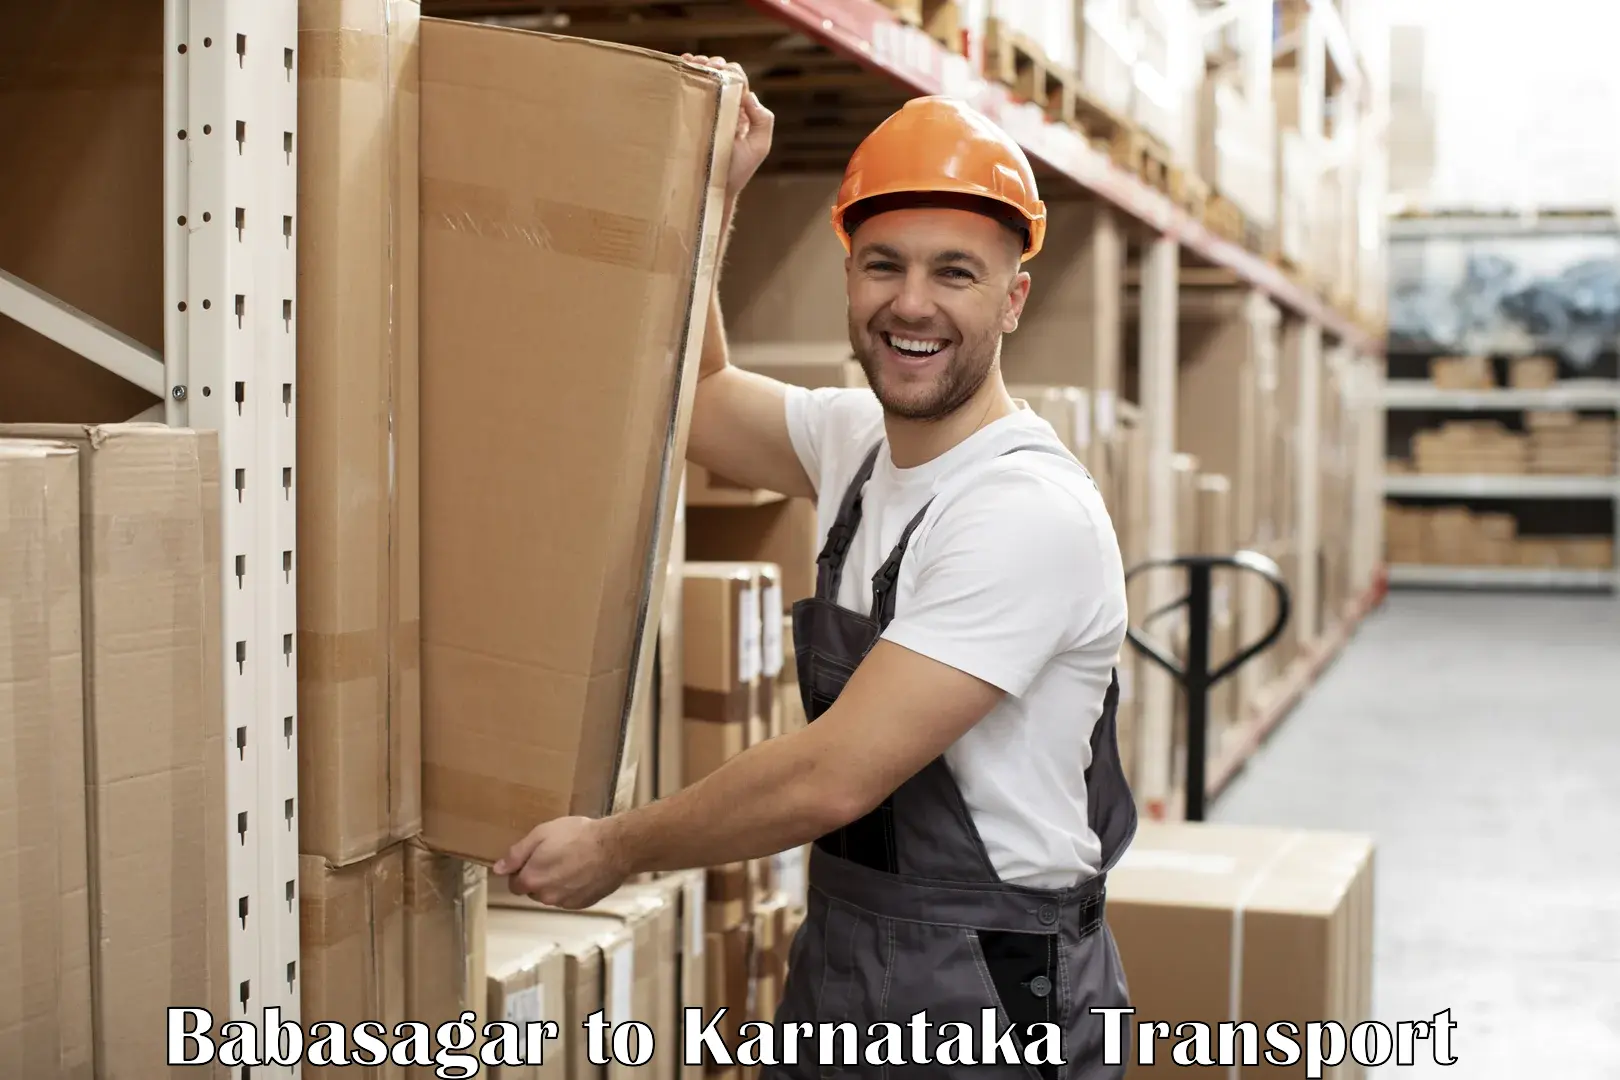 Bike transport service Babasagar to Mangalore Port